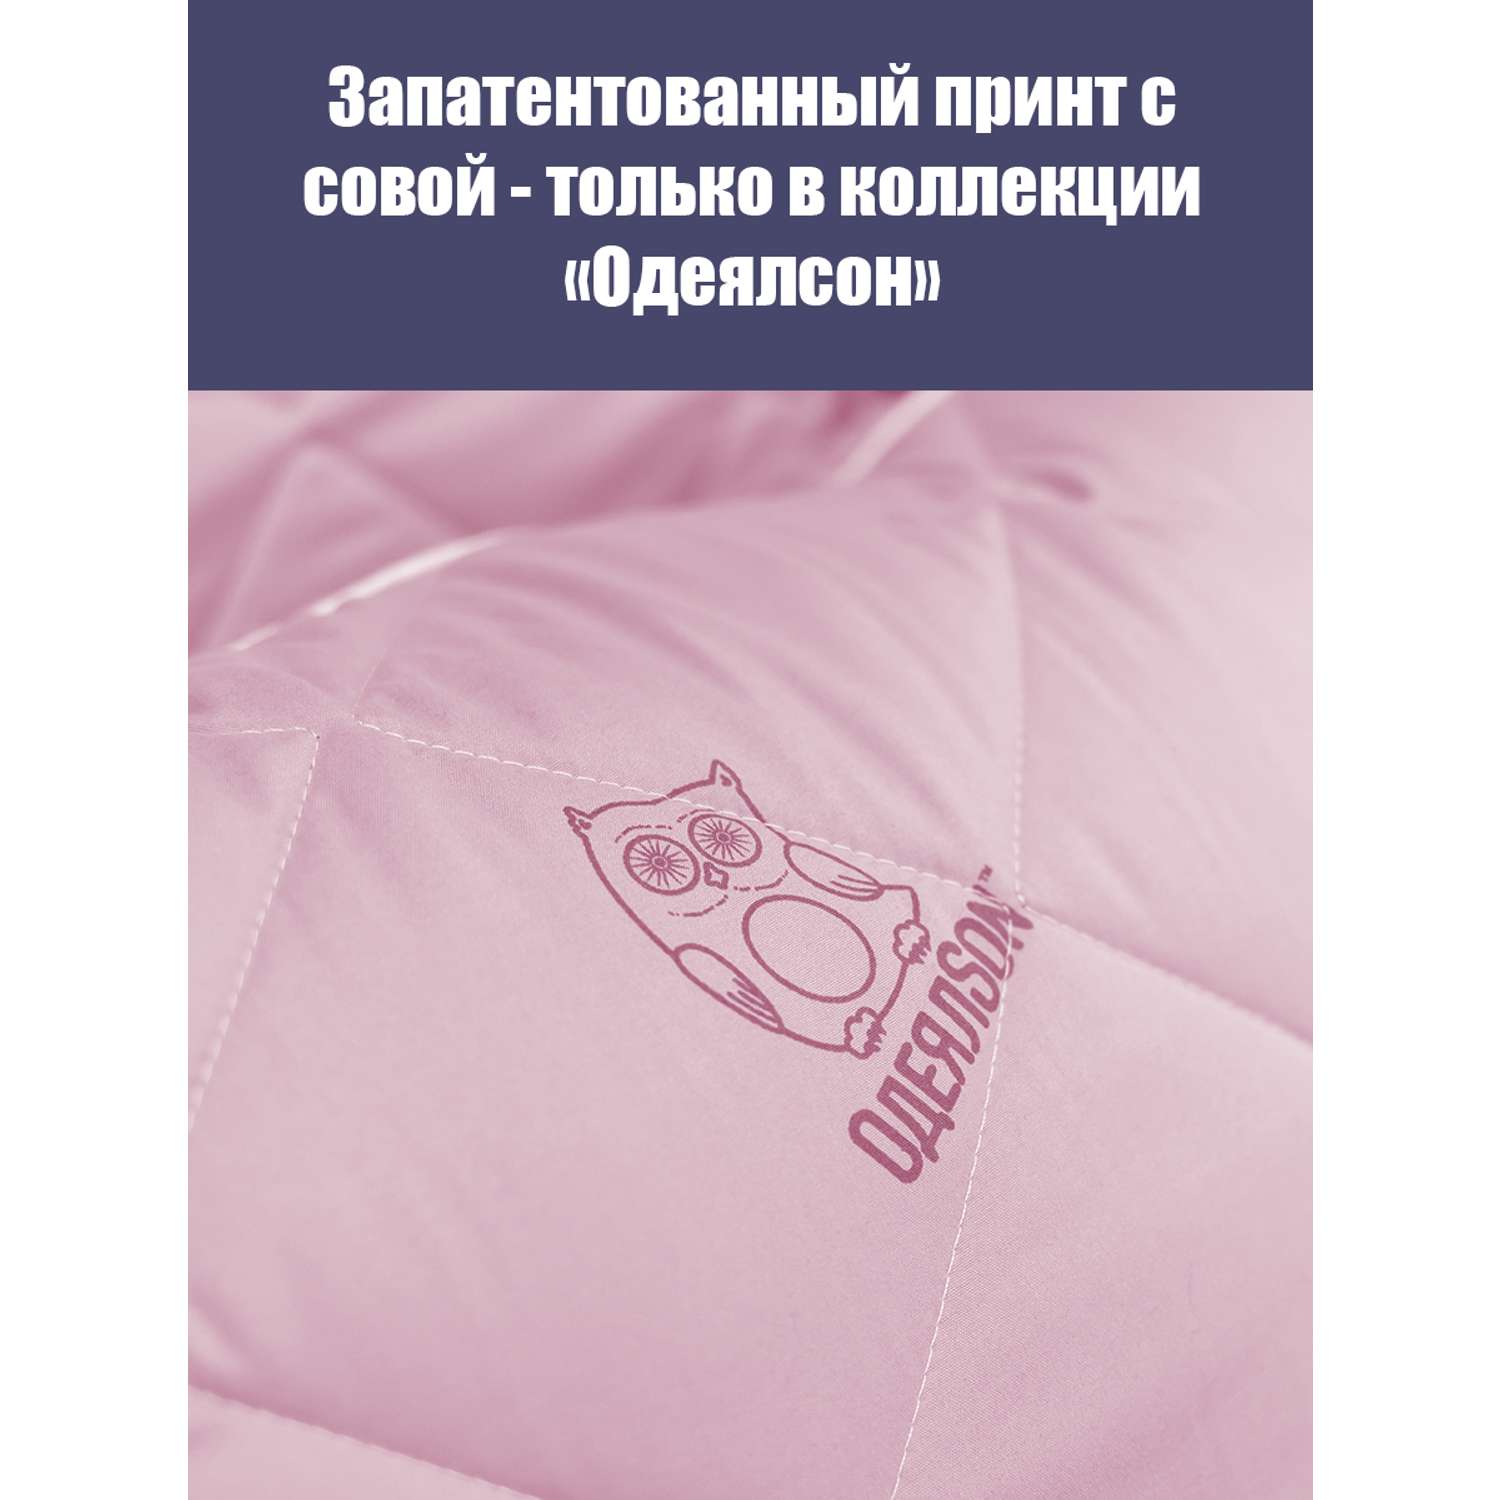 Одеяло Мягкий сон одеялсон 172x205 см - фото 2